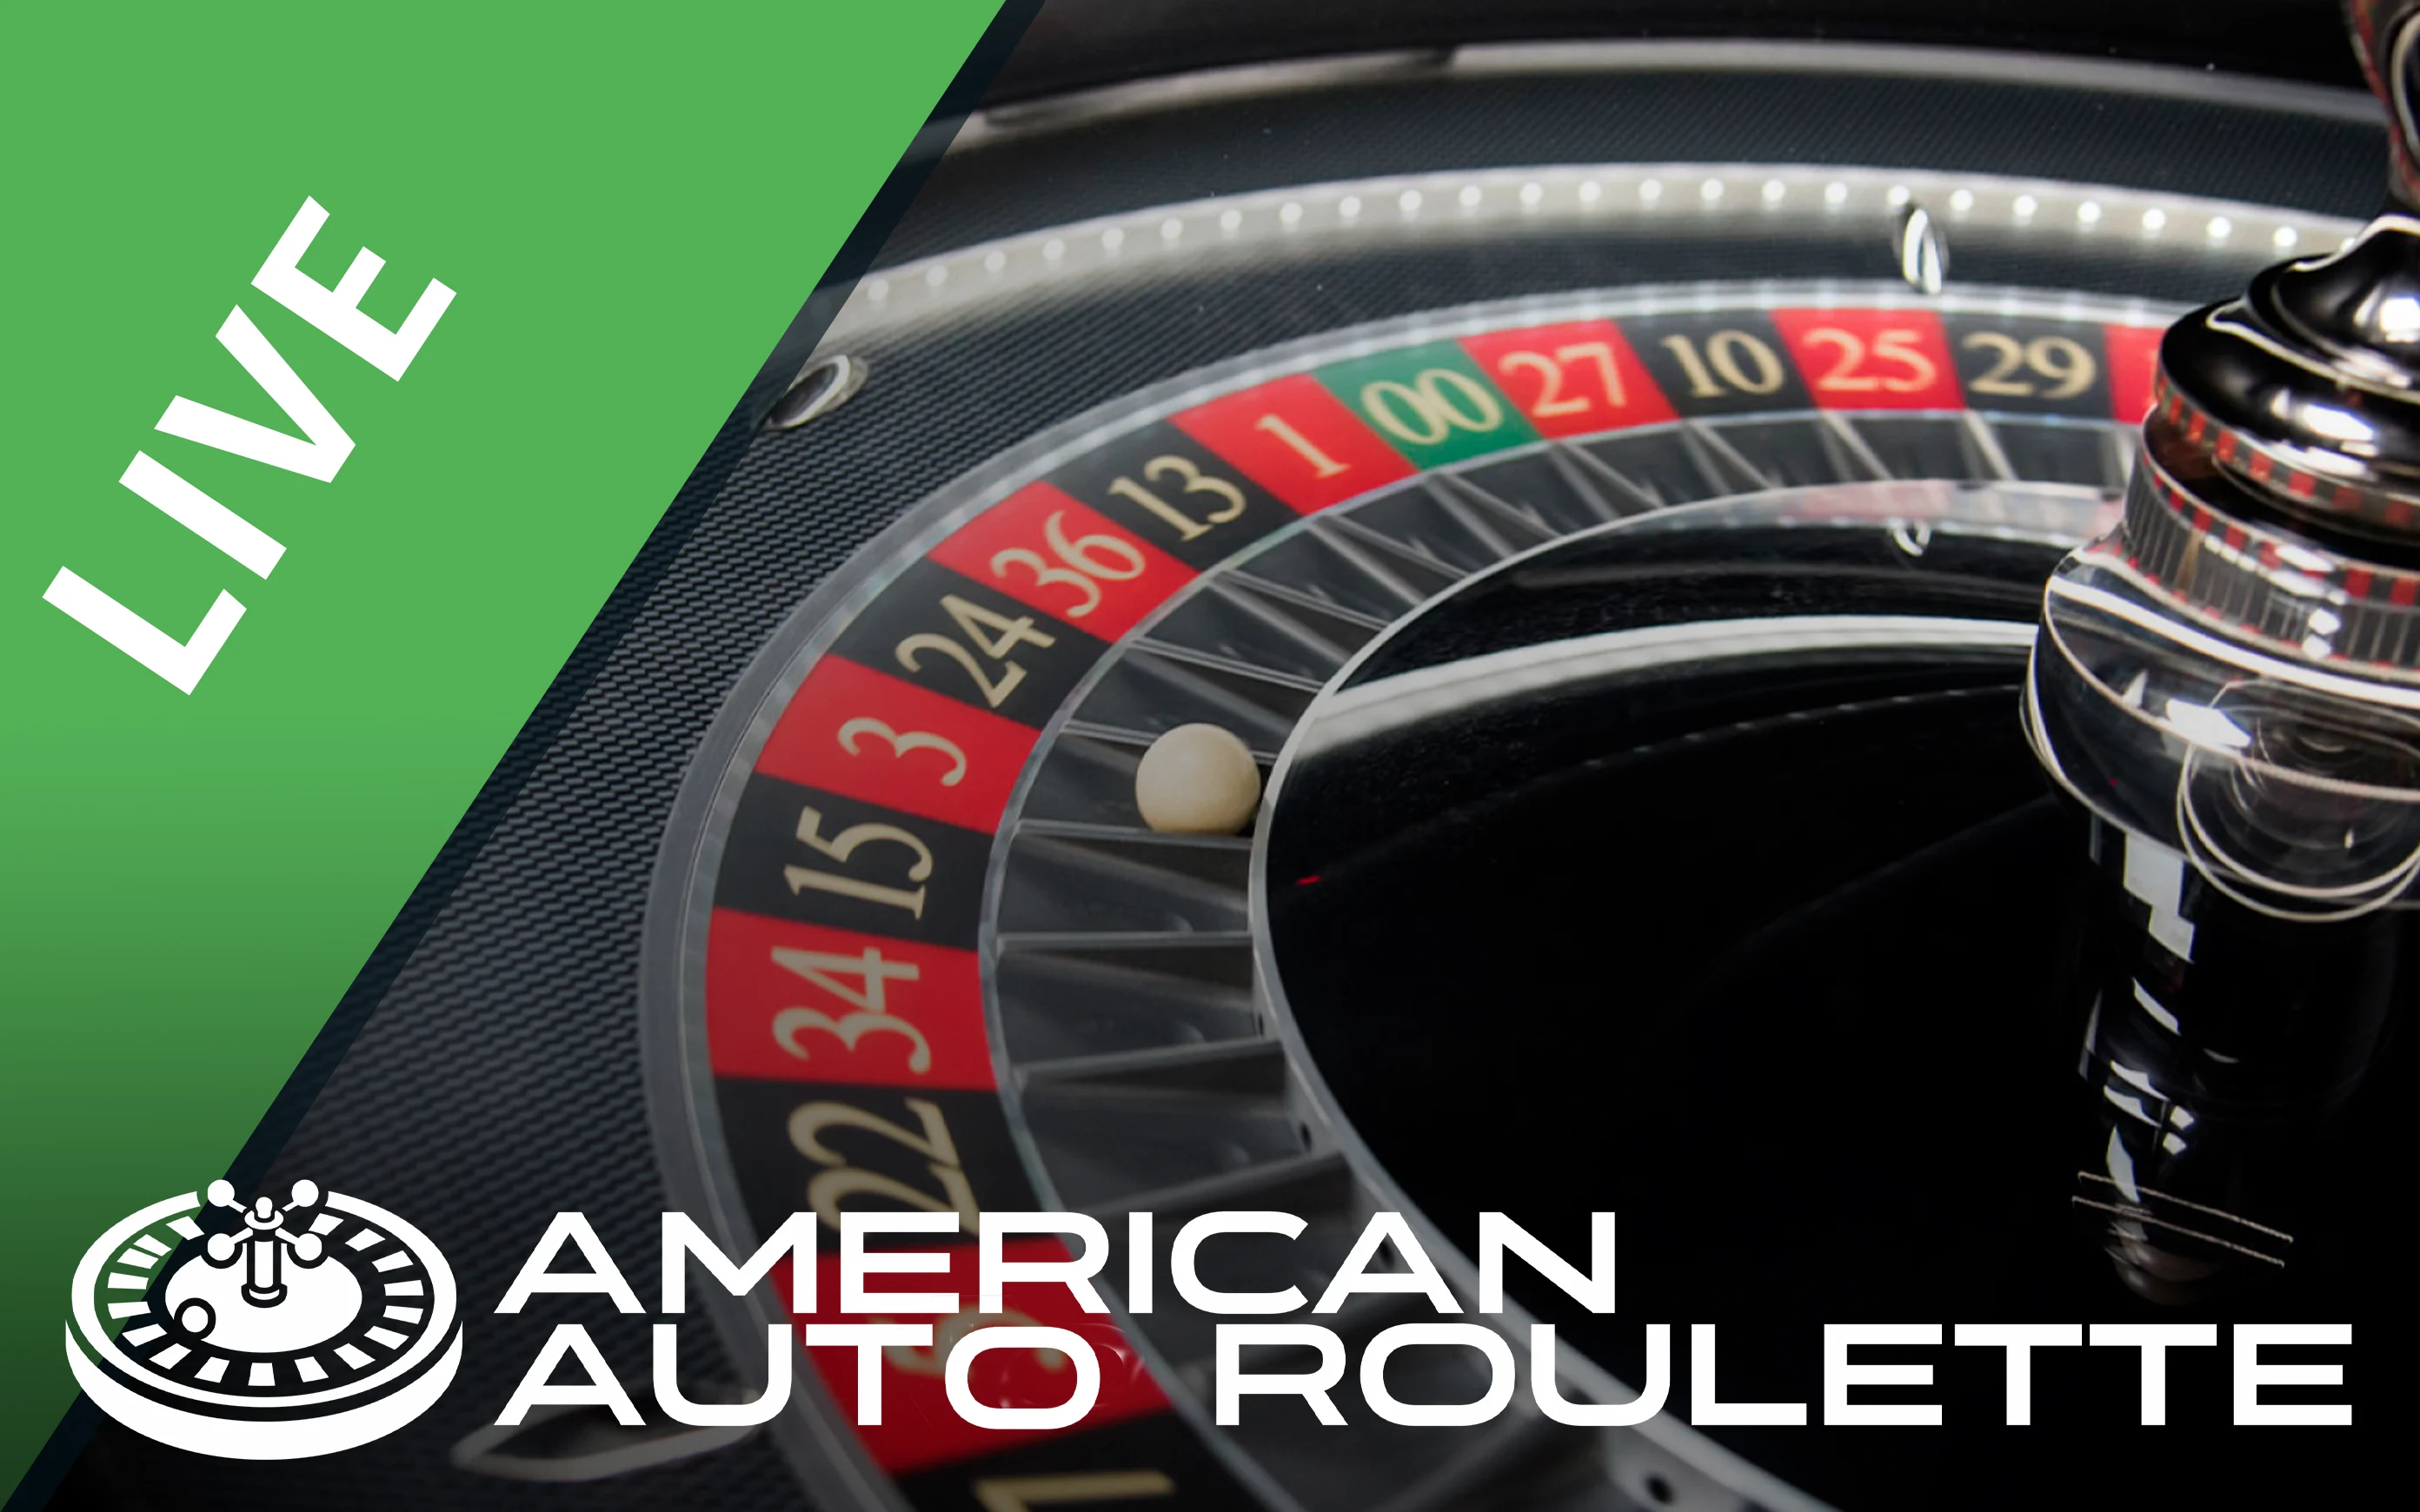 Zagraj w American Auto Roulette w kasynie online Starcasino.be